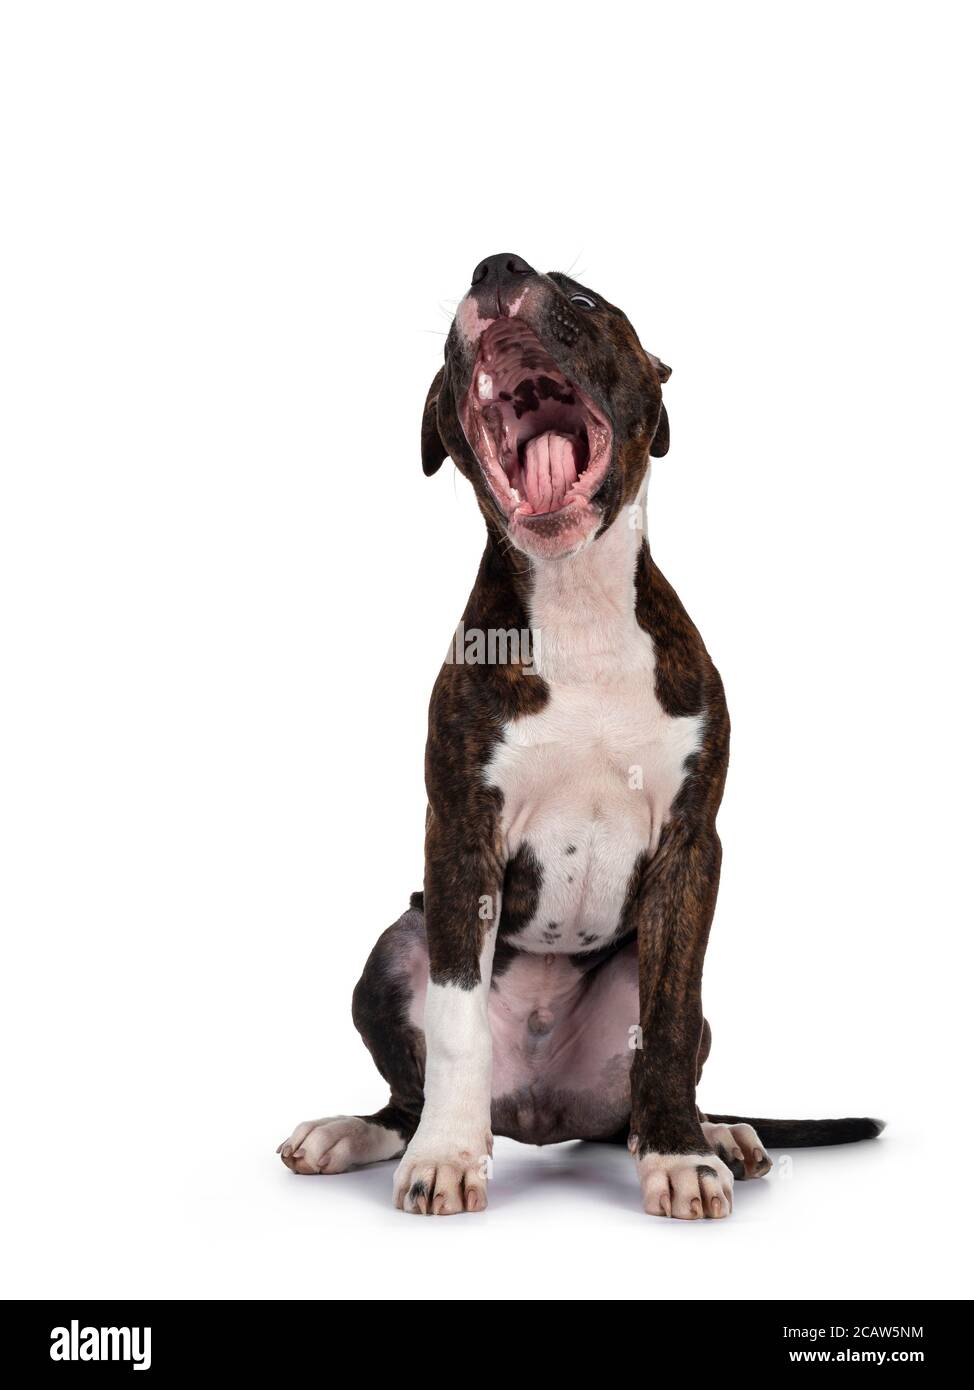 Jeune bringé avec le chien américain blanc Staffordshire Terrier, assis face à l'avant avec la bouche large ouverte. Isolé sur fond blanc. Banque D'Images